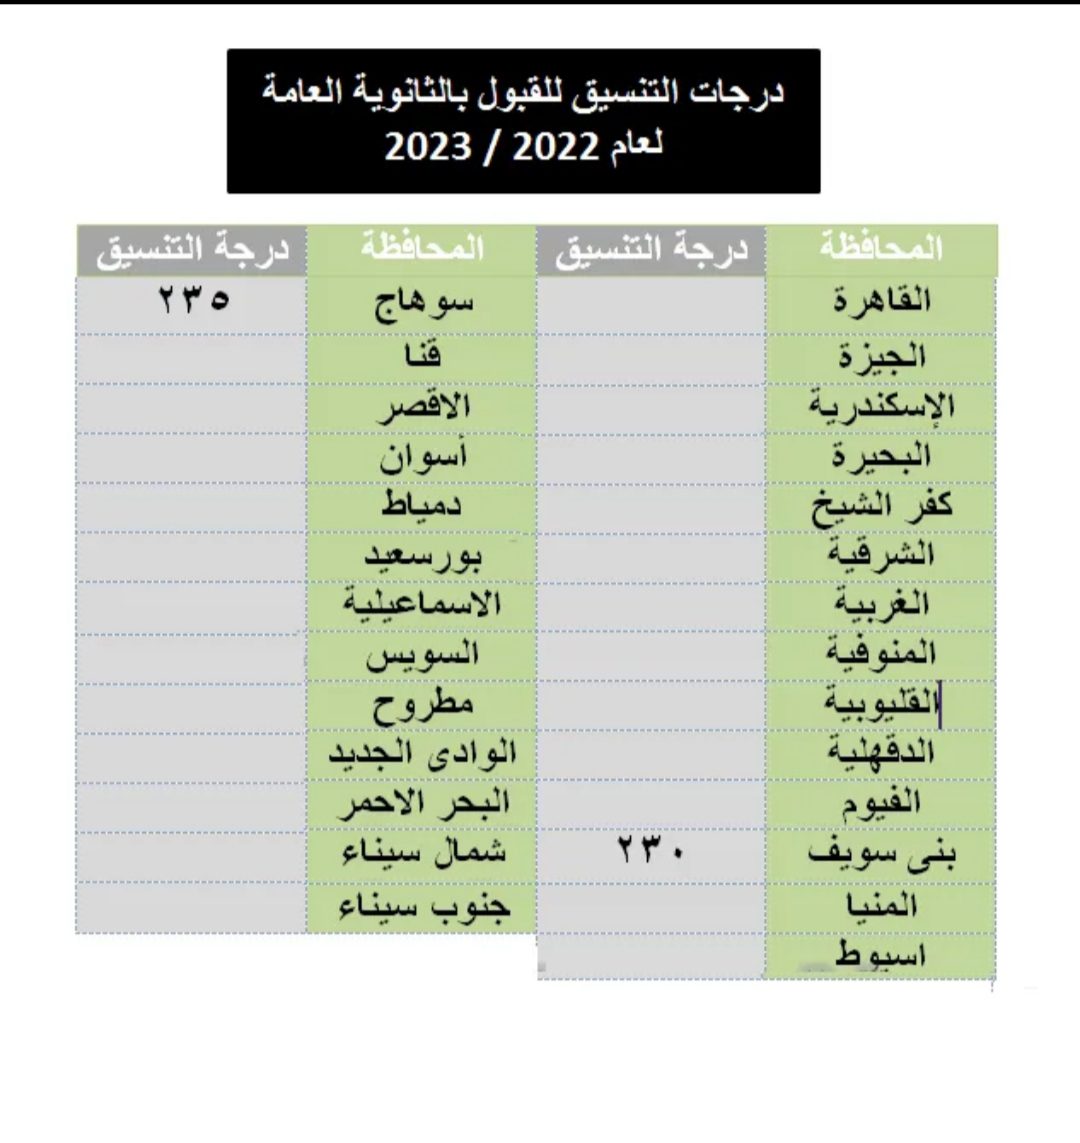 تنسيق القبول بأولى ثانوي 2023 محافظة جنوب سيناء - تنسيق الثانوية